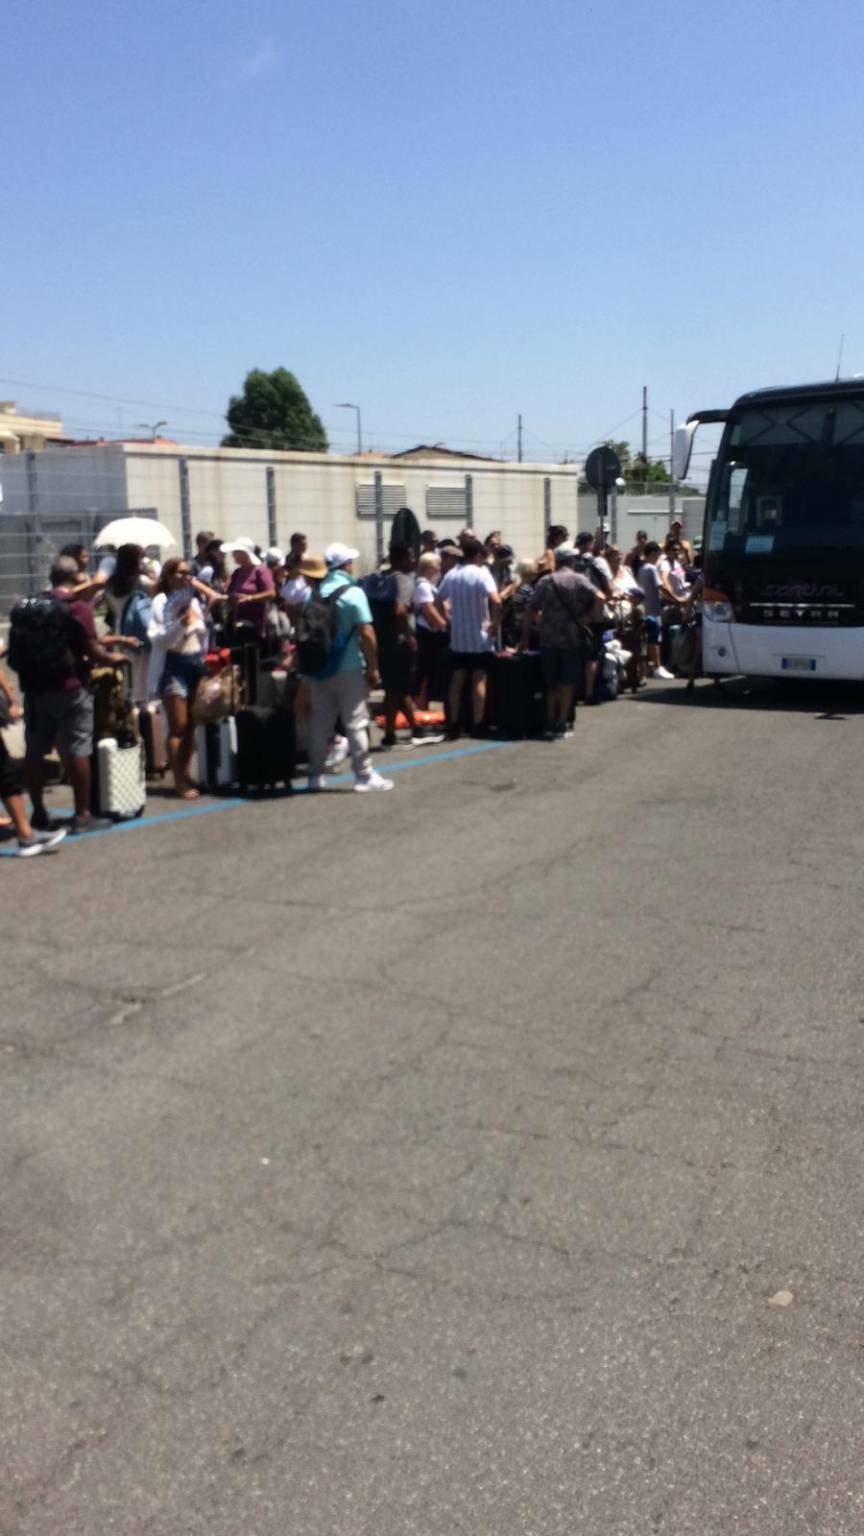 Ladispoli, tra caldo e cantieri è caos in stazione: bus sostitutivi presi d’assalto